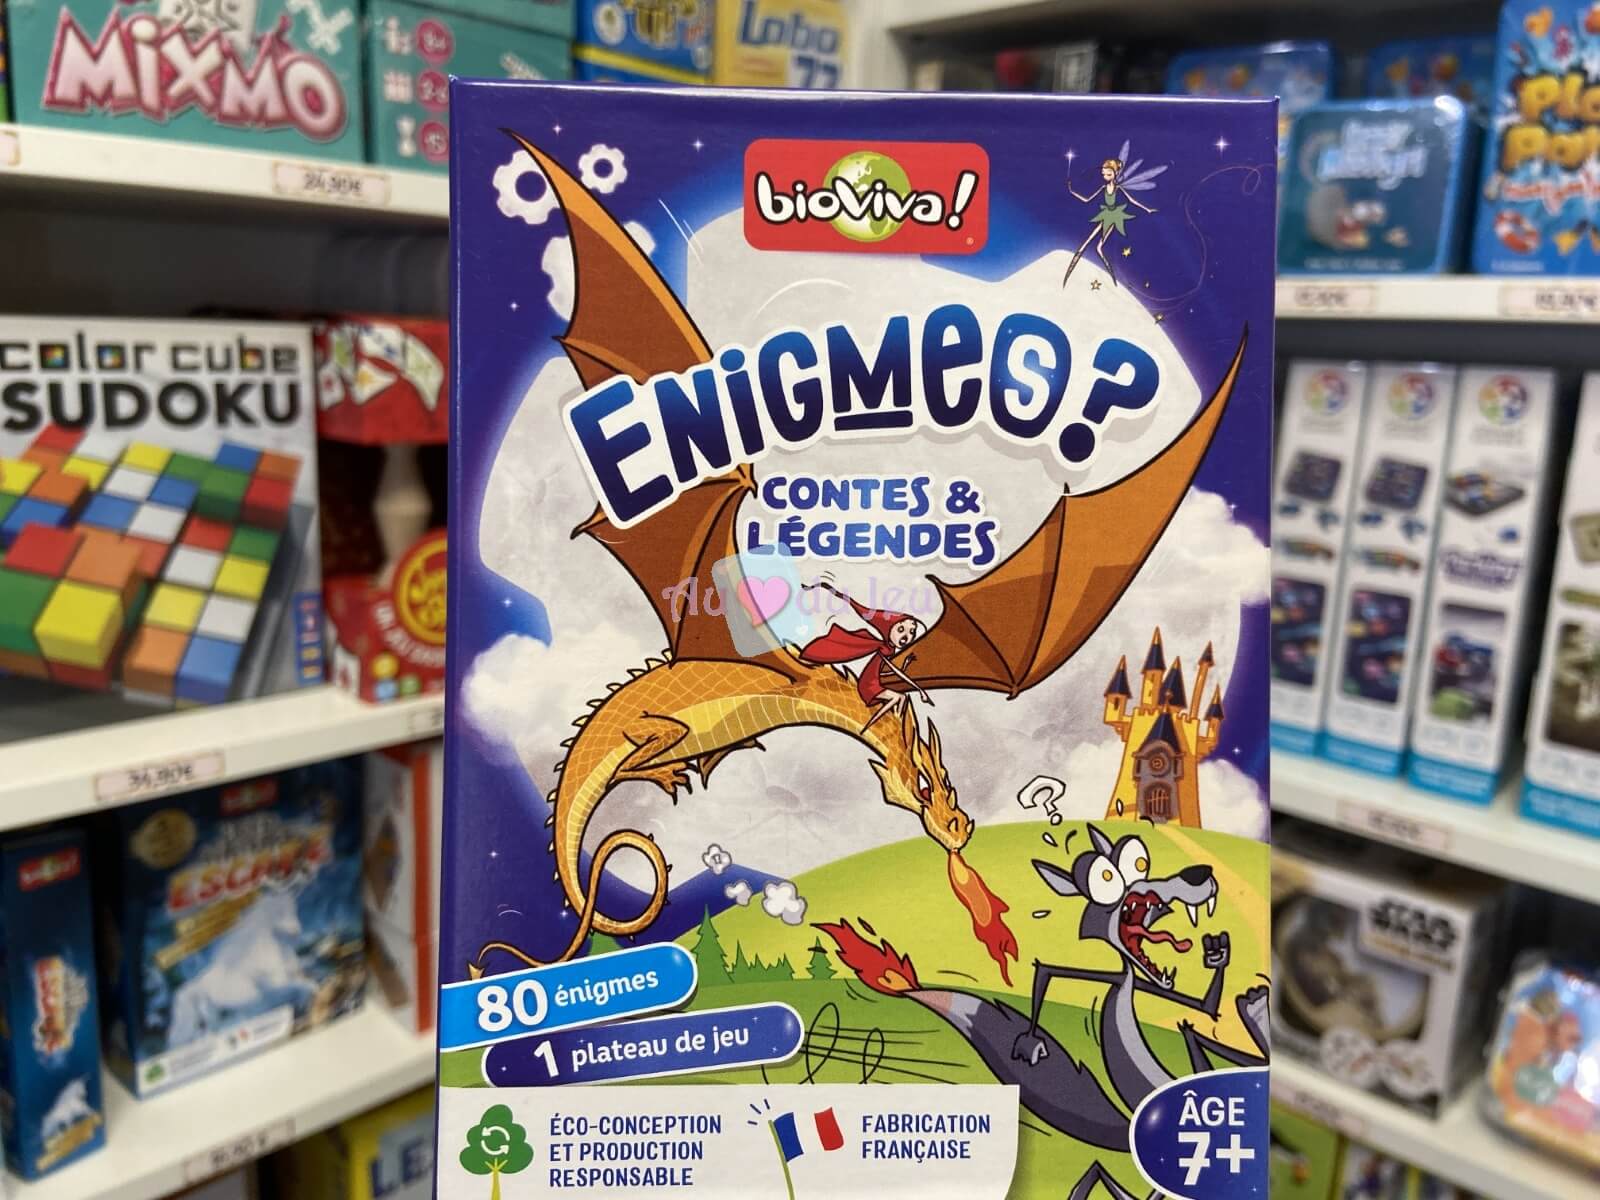 Enigmes - Contes et Legendes